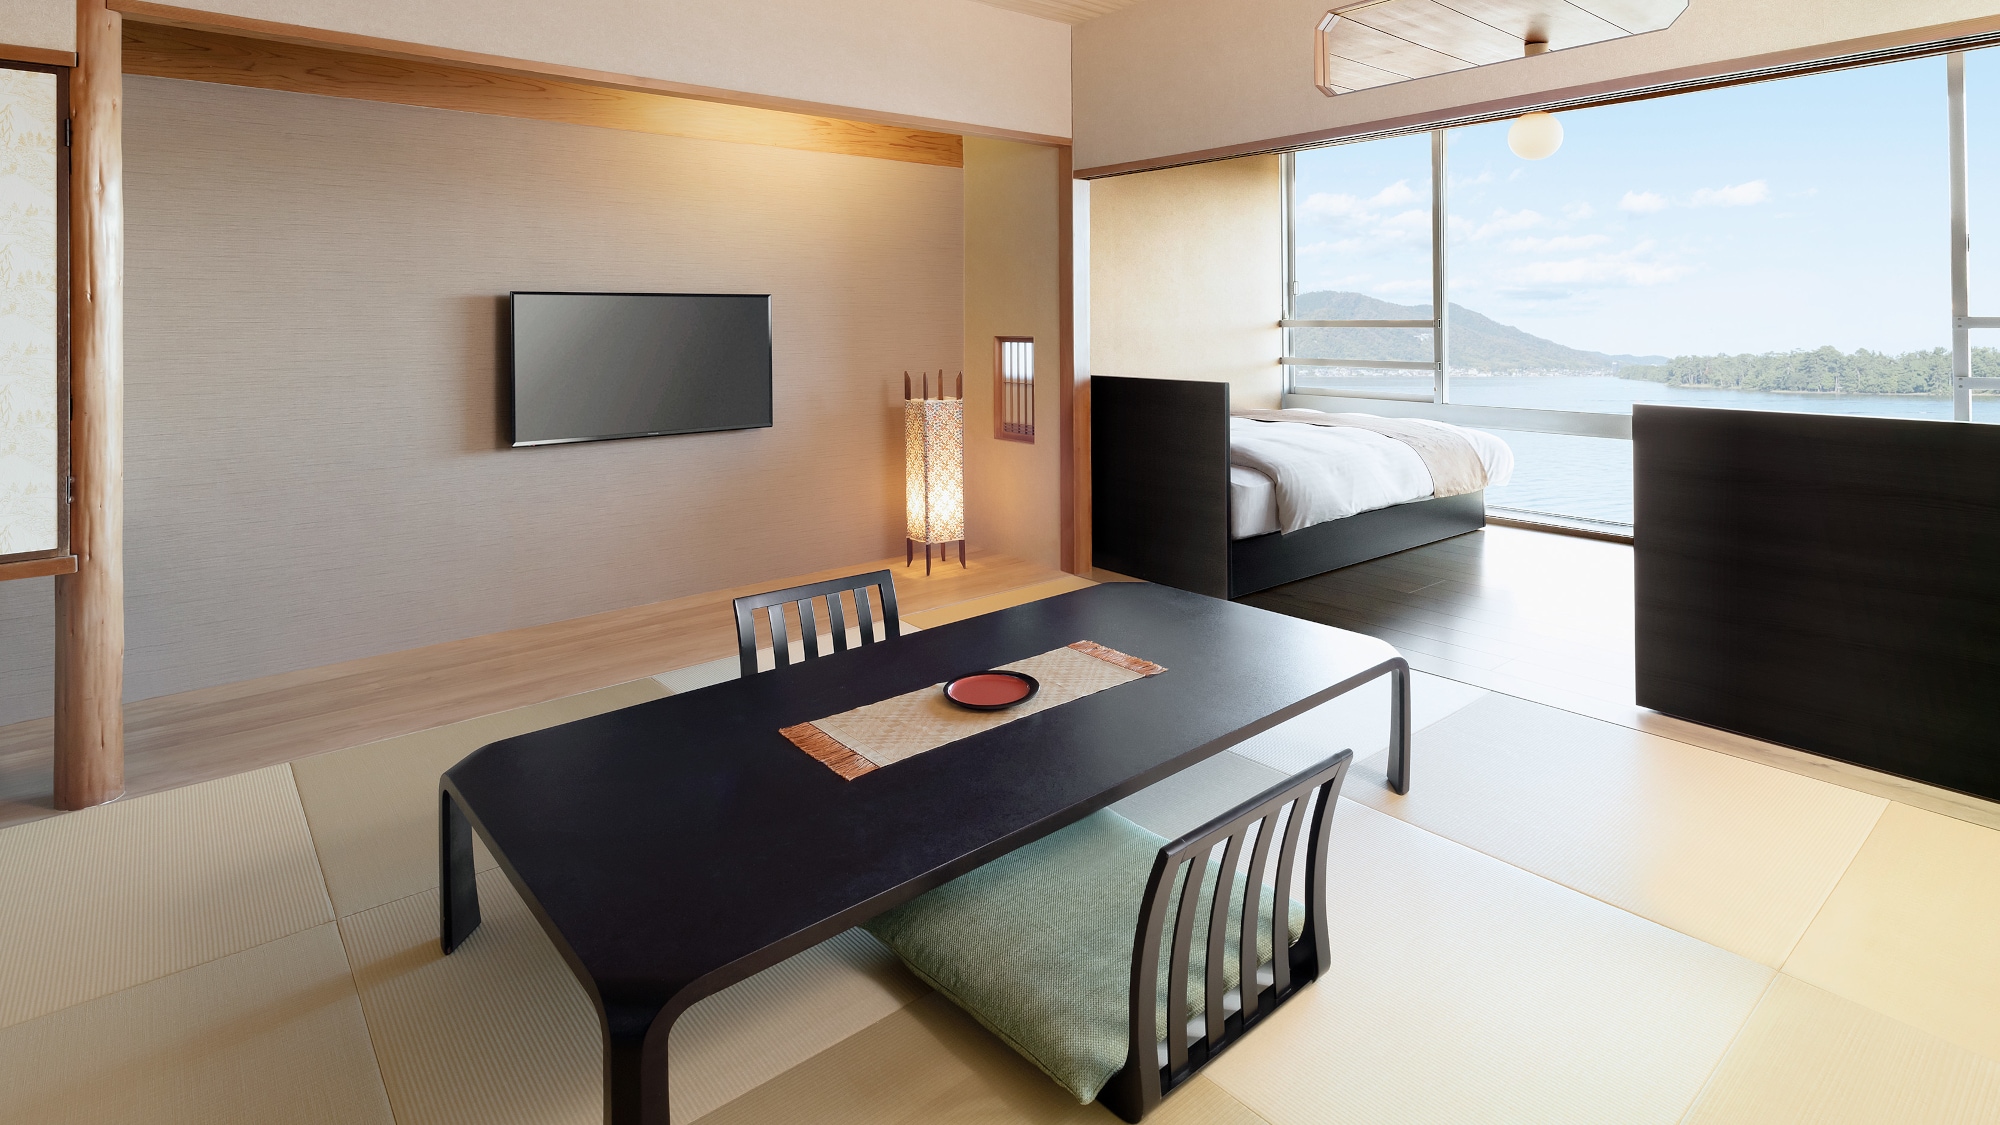 Contoh kamar Jepang modern (kamar bergaya Jepang + tempat tidur twin)